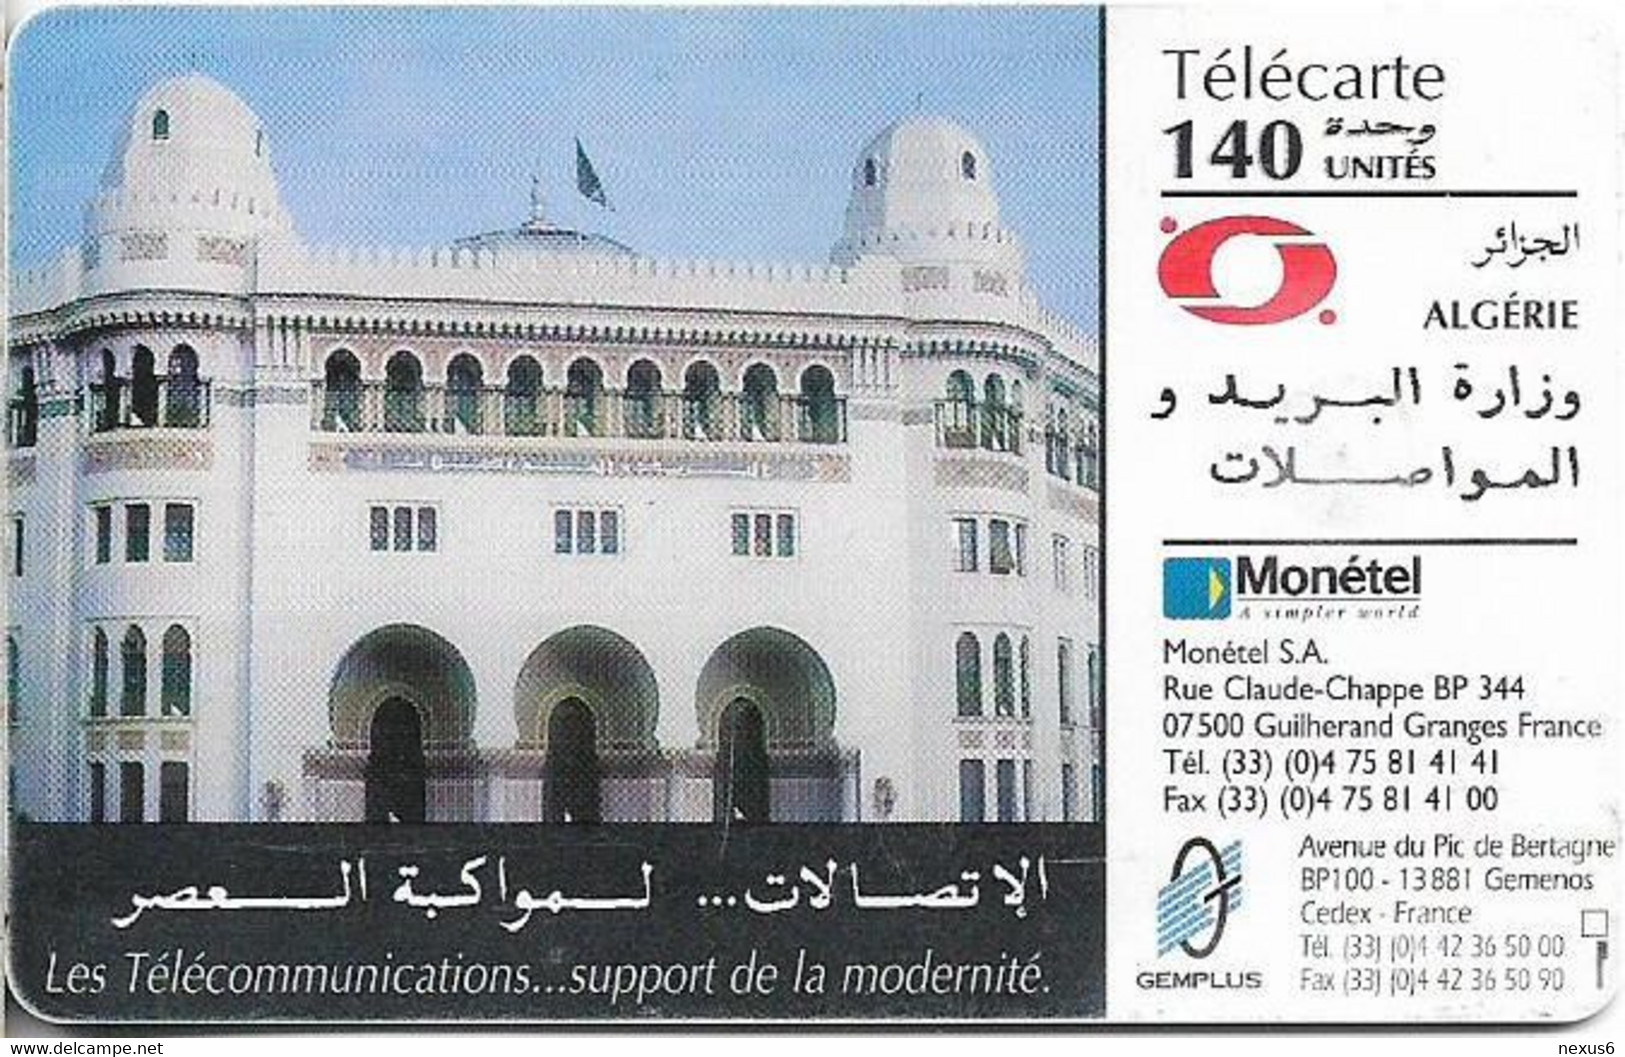 Algeria - PTT-Monetel - Central Post Office, Gem1B Not Symmetr. White/Gold, 1996, 140Units, Used - Algerien